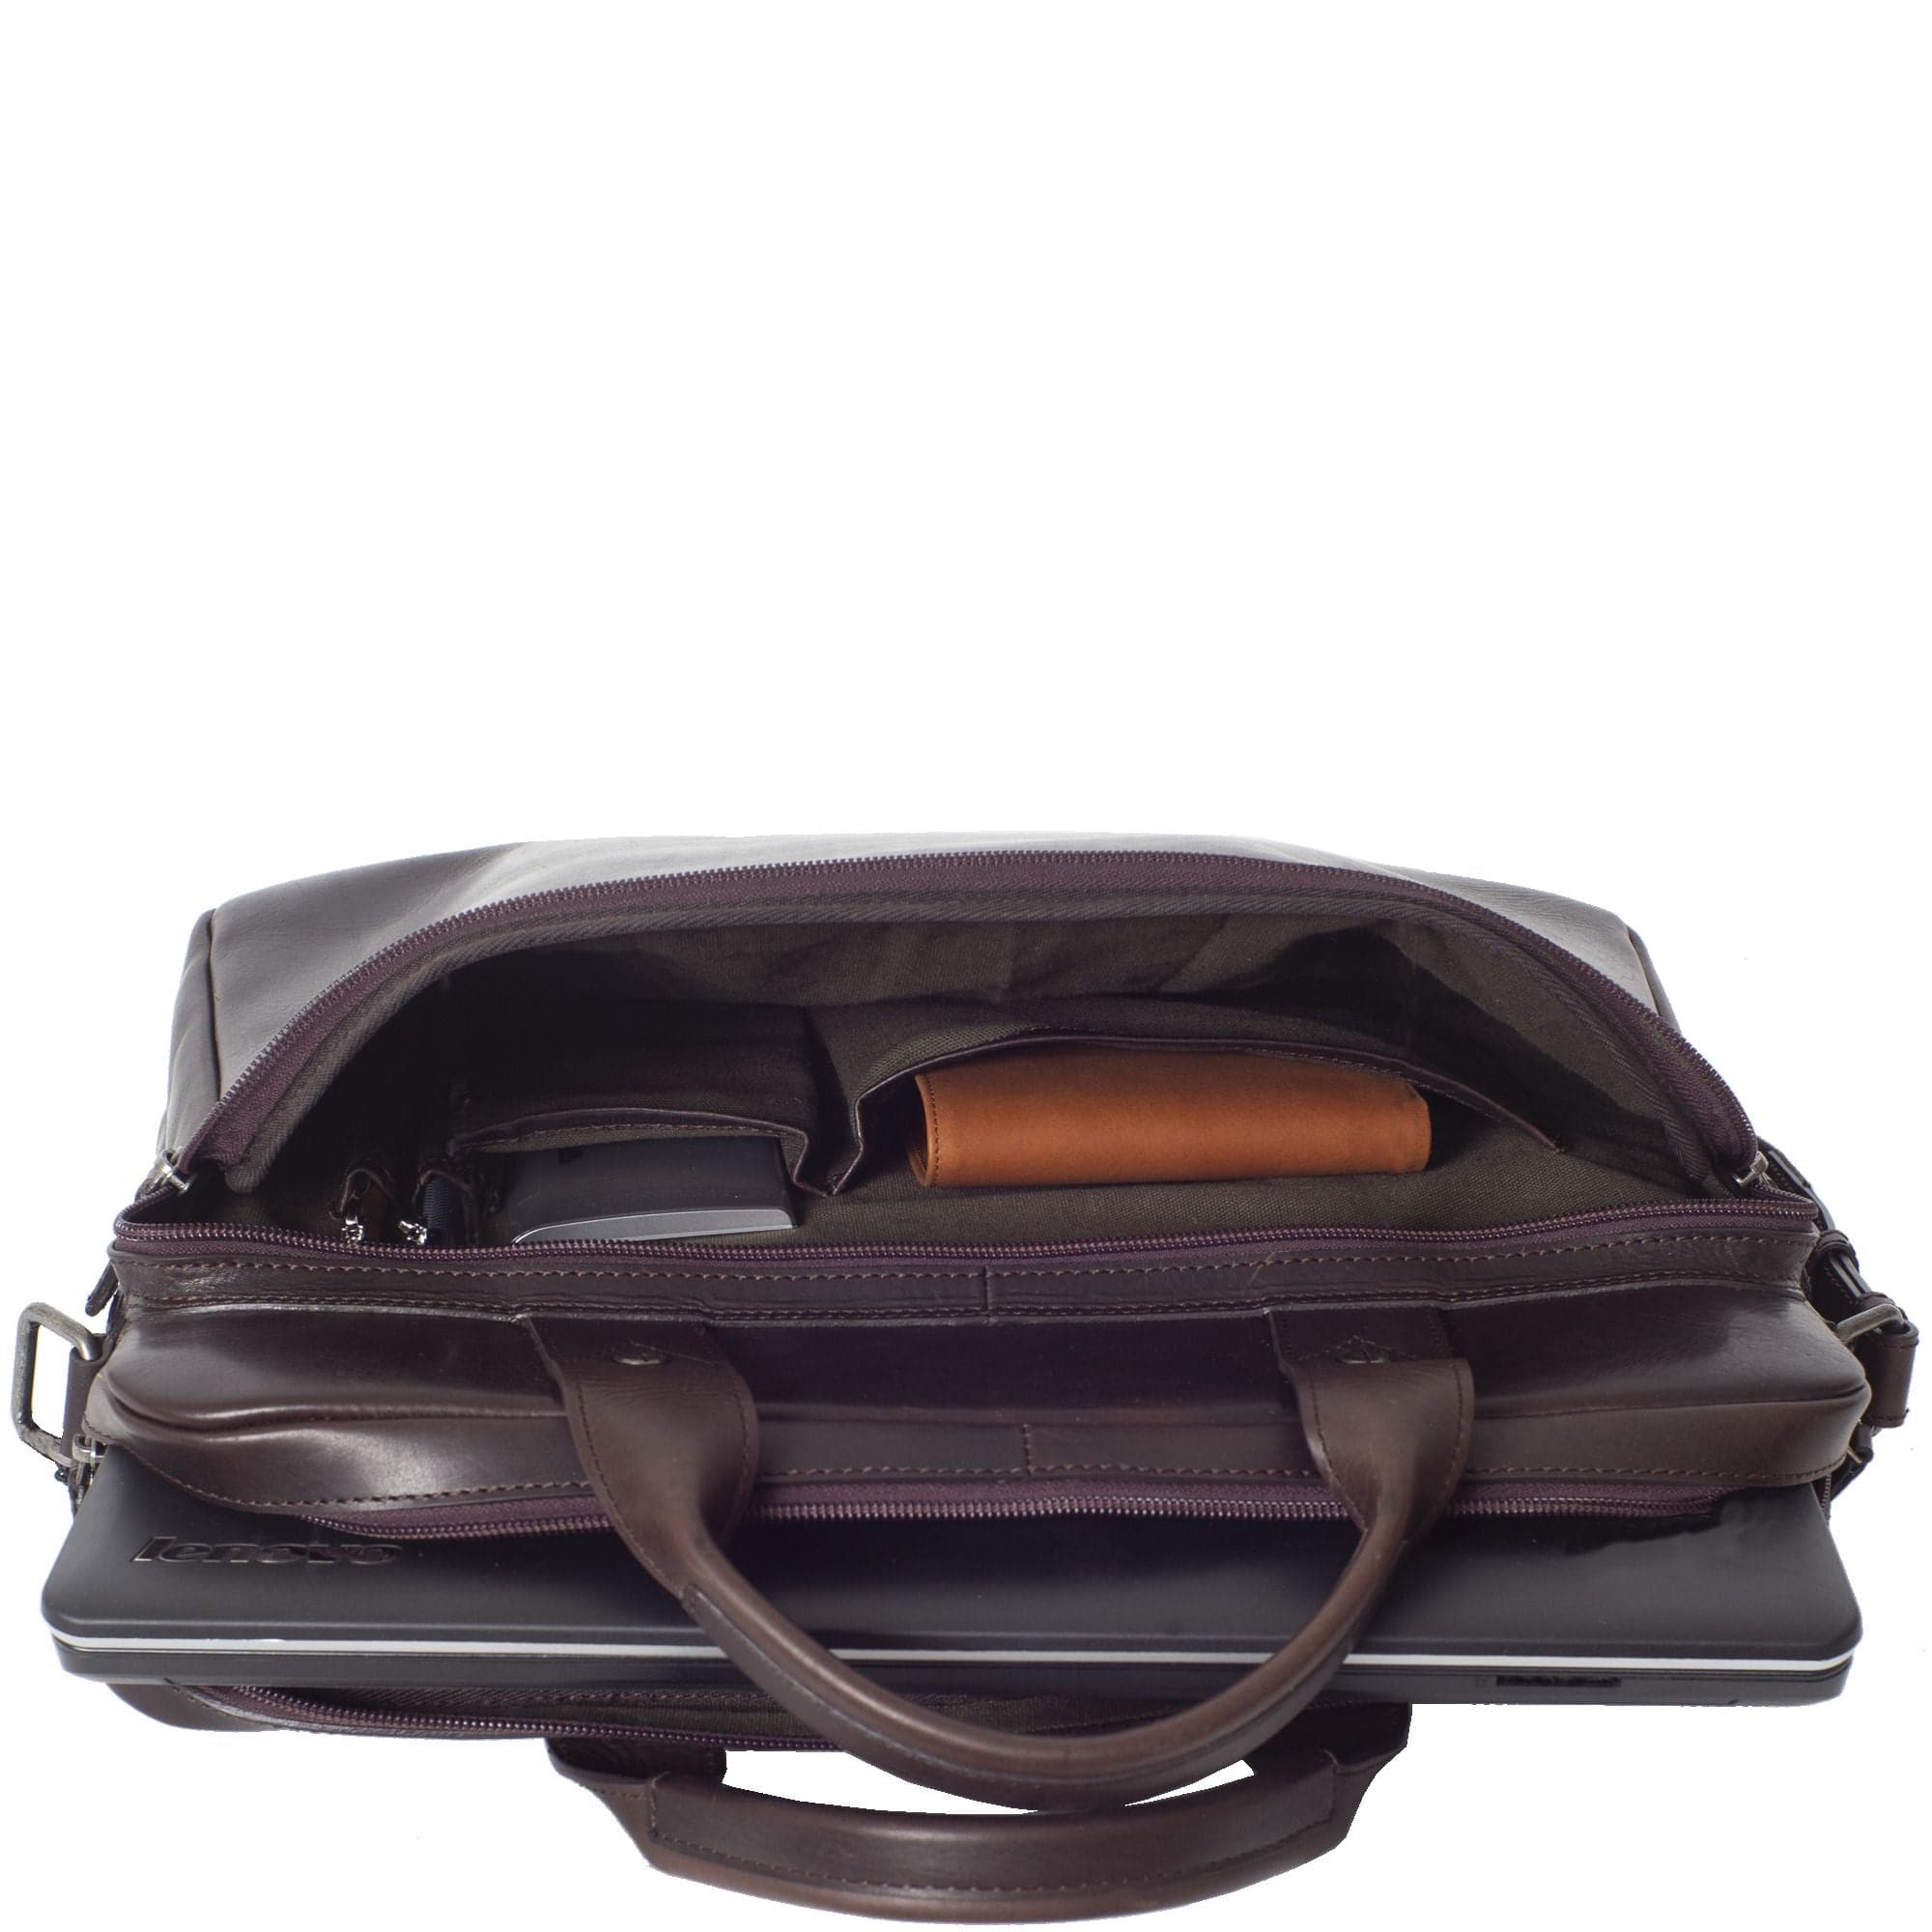 Businesstasche Laptoptasche 15 Zoll Glattleder braun Vortasche mit Boden